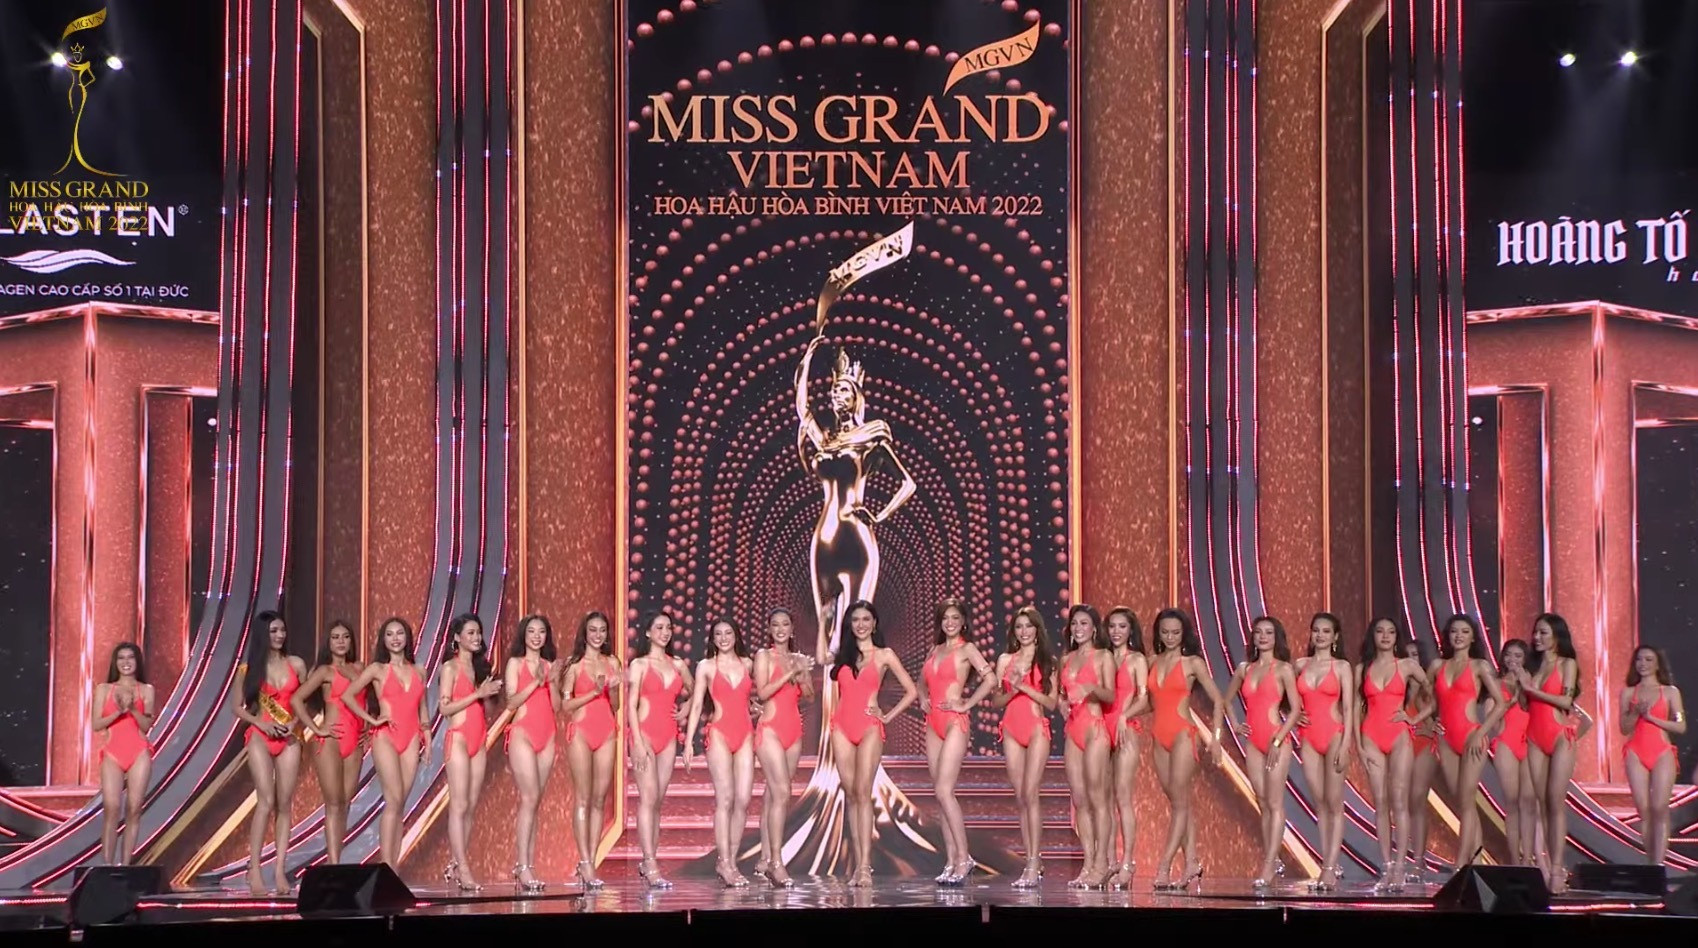 Đoàn Thiên Ân đăng quang Miss Grand Vietnam - Hoa hậu Hòa bình Việt Nam 2022 - 21